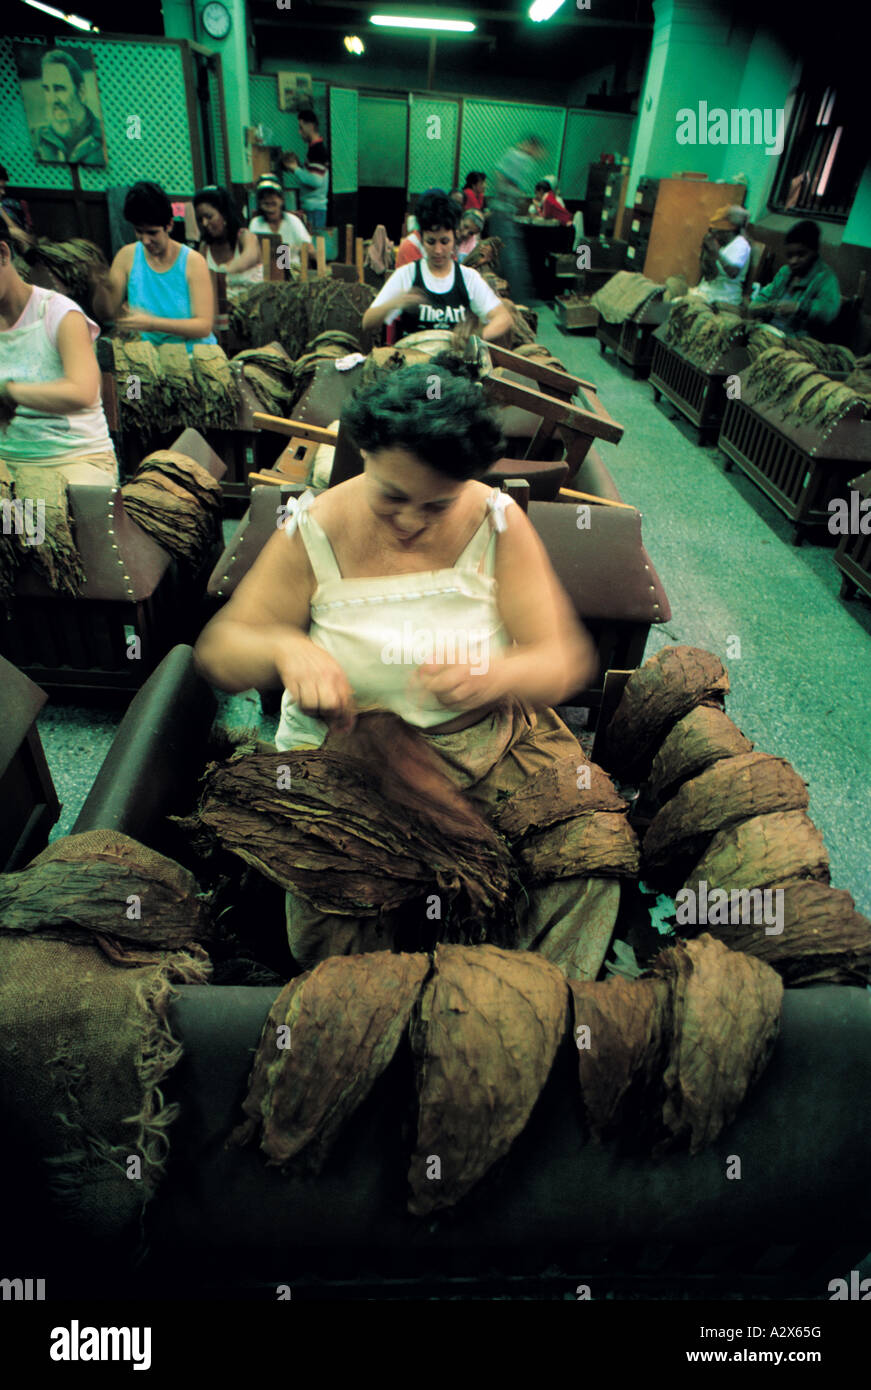 Fábrica de cigarrillos liados a mano, Real Fabrica de Tabacos Partagas, La Habana, Cuba. Foto de stock